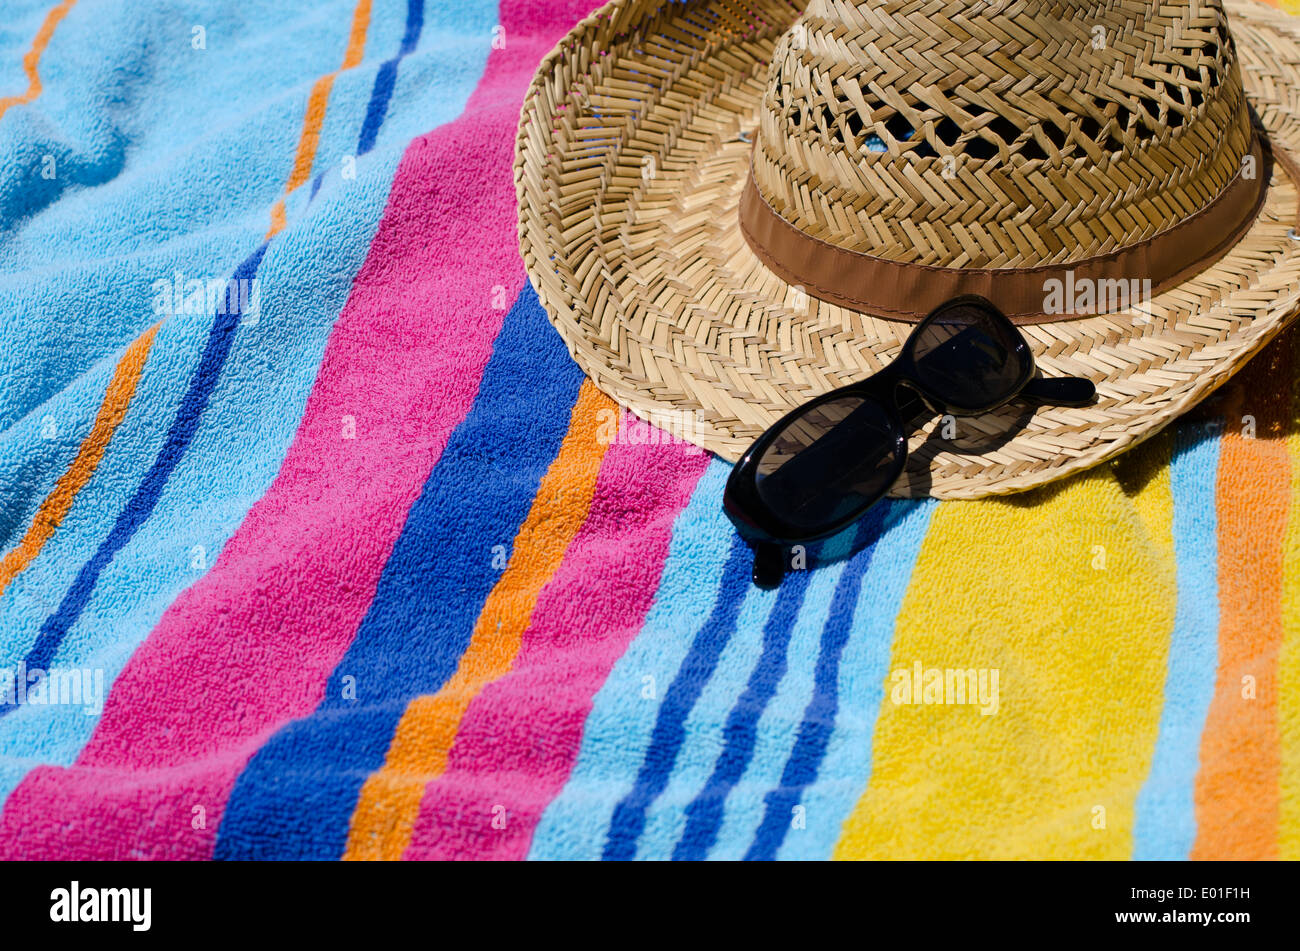 Maison de vacances concept avec serviette de plage, lunettes de soleil et chapeau Banque D'Images